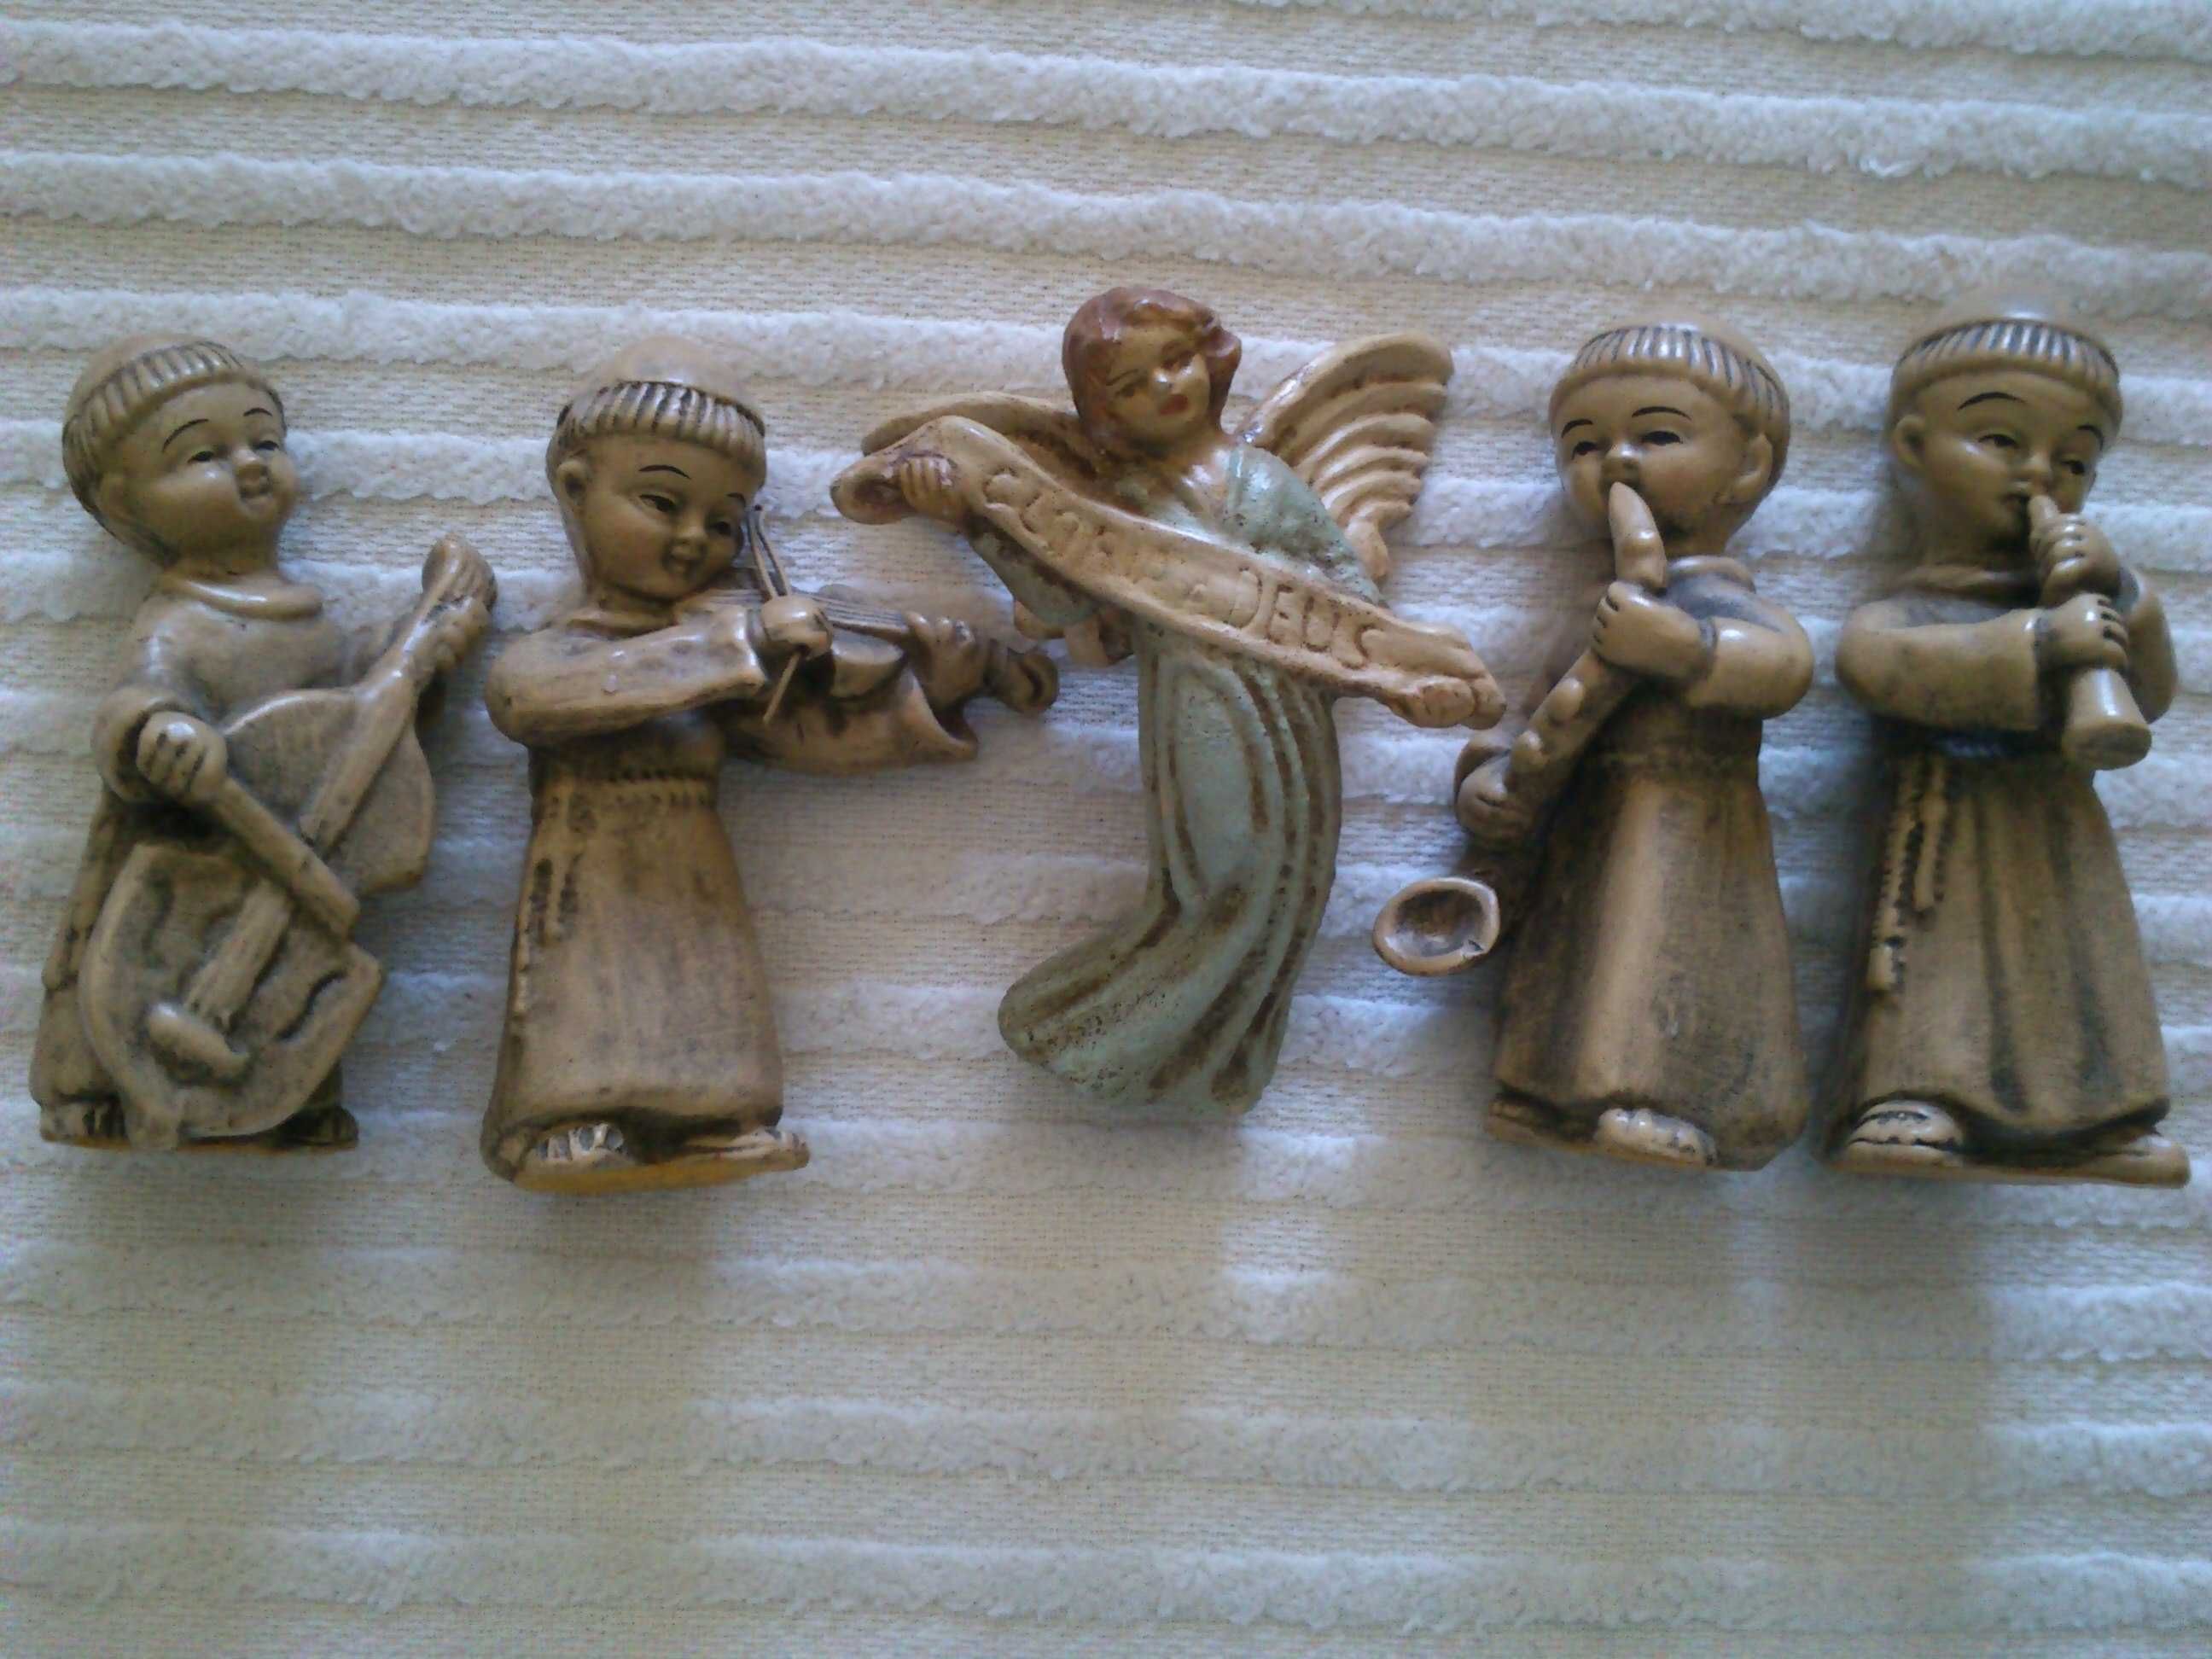 4 Frades músicos e anjo em barro, conjunto vistoso, bastante engraçado